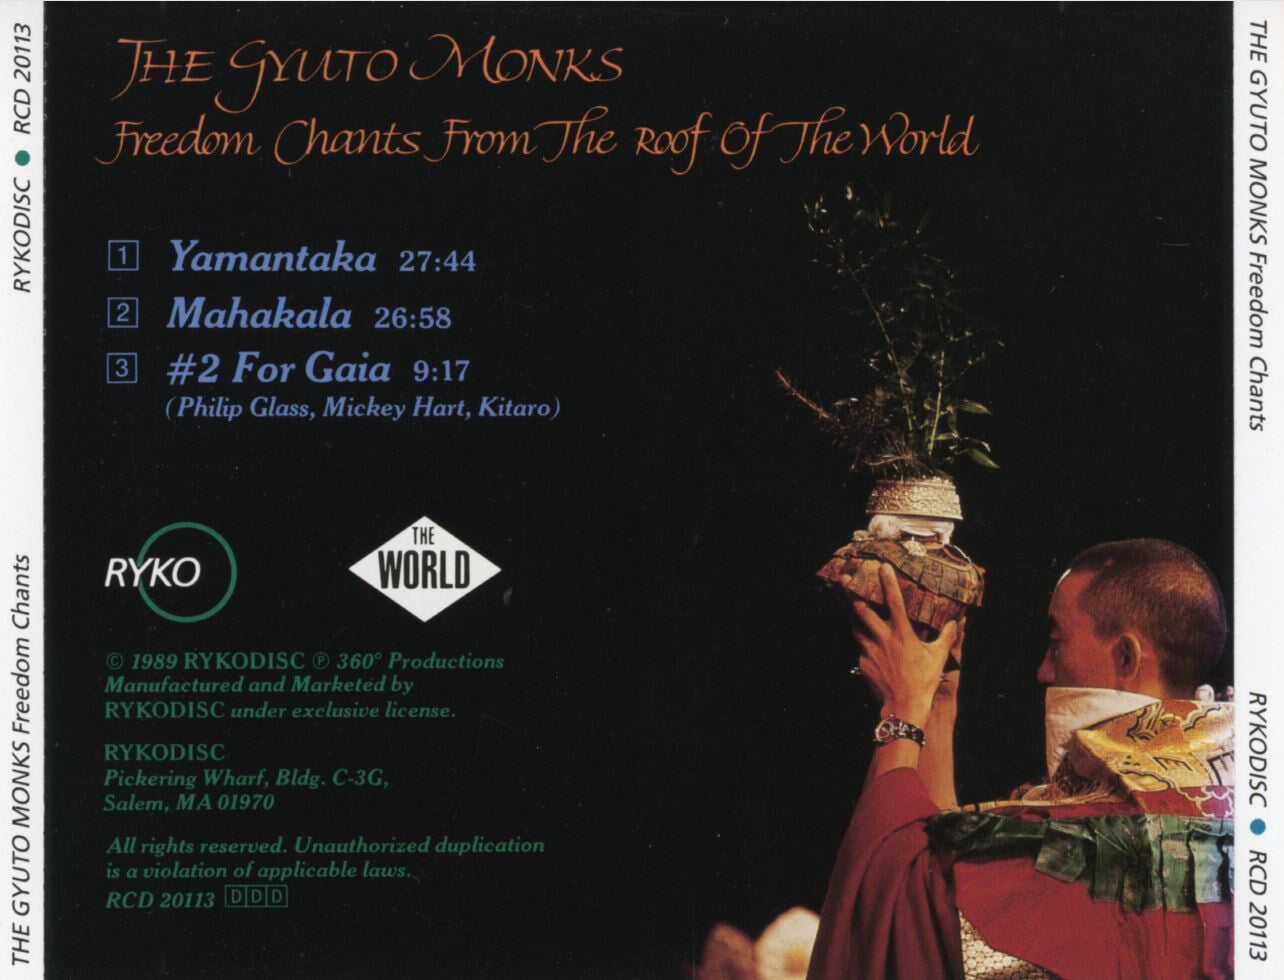 규토 몽크스 - The Gyuto Monks - Freedom Chants From The Roof Of The World [U.S발매]